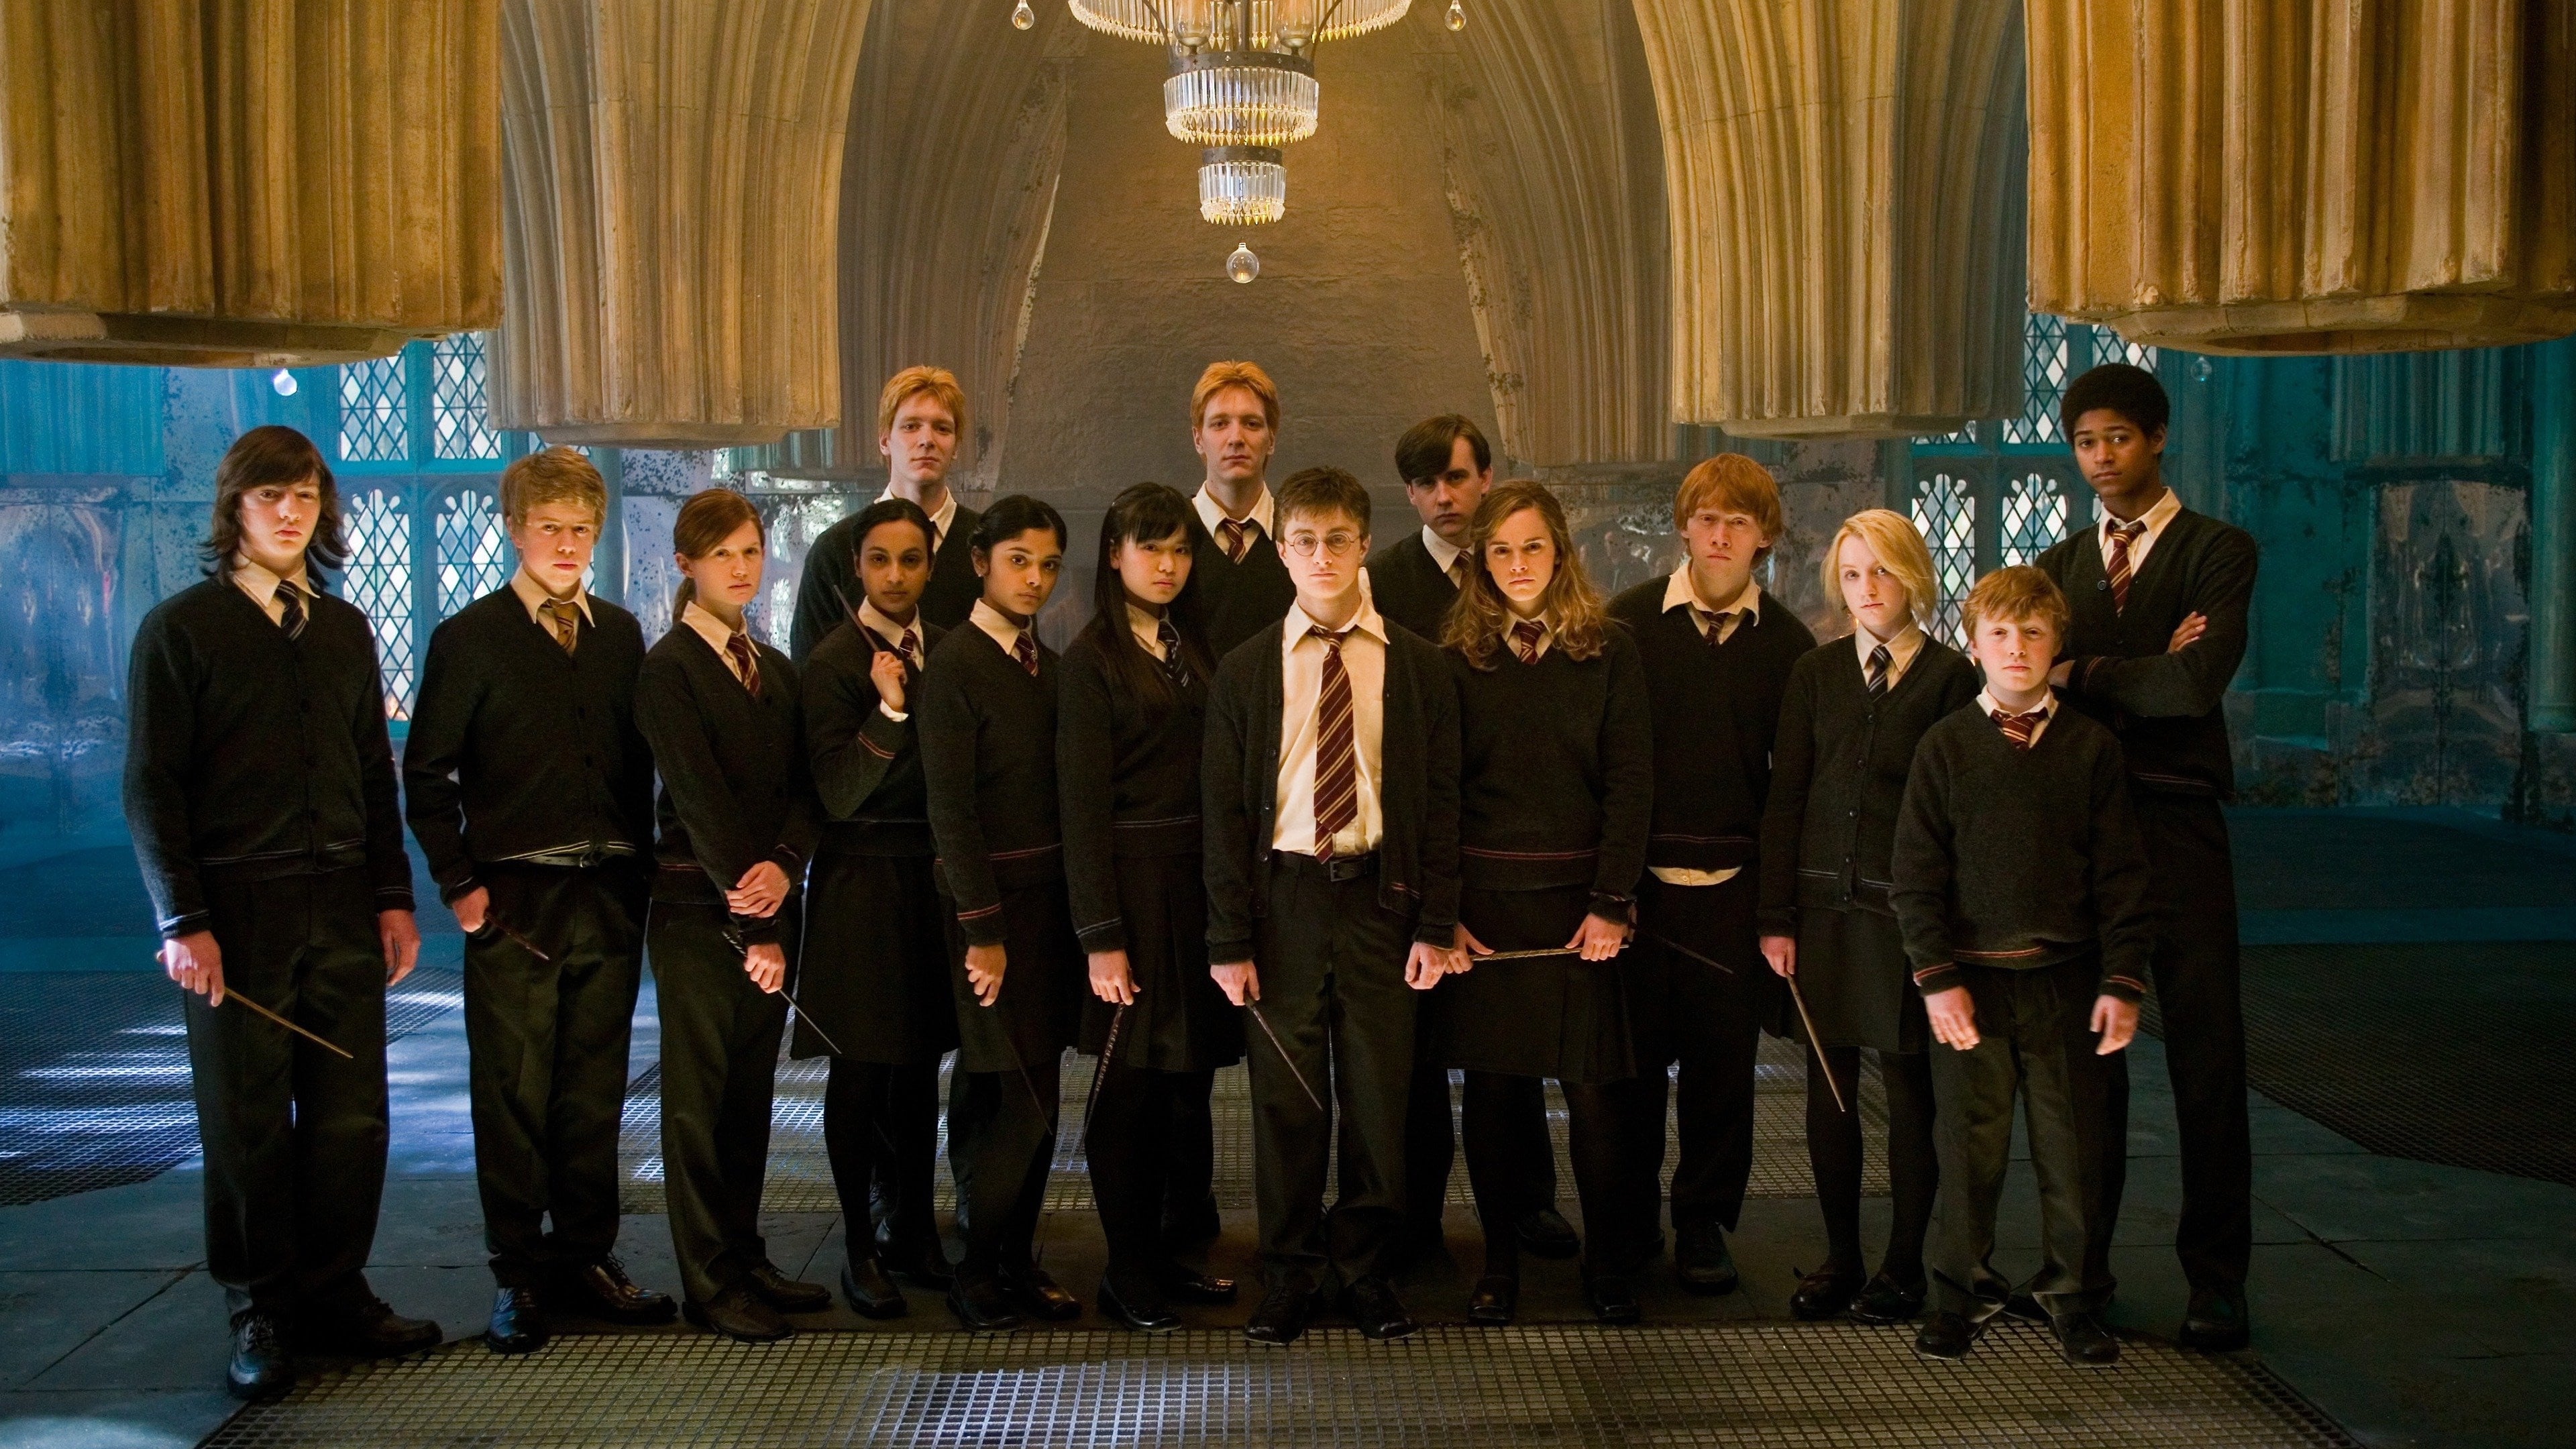 Image du film Harry Potter et l'Ordre du Phénix 9svsjni0pnrot53qbej9jqzmuekjpg